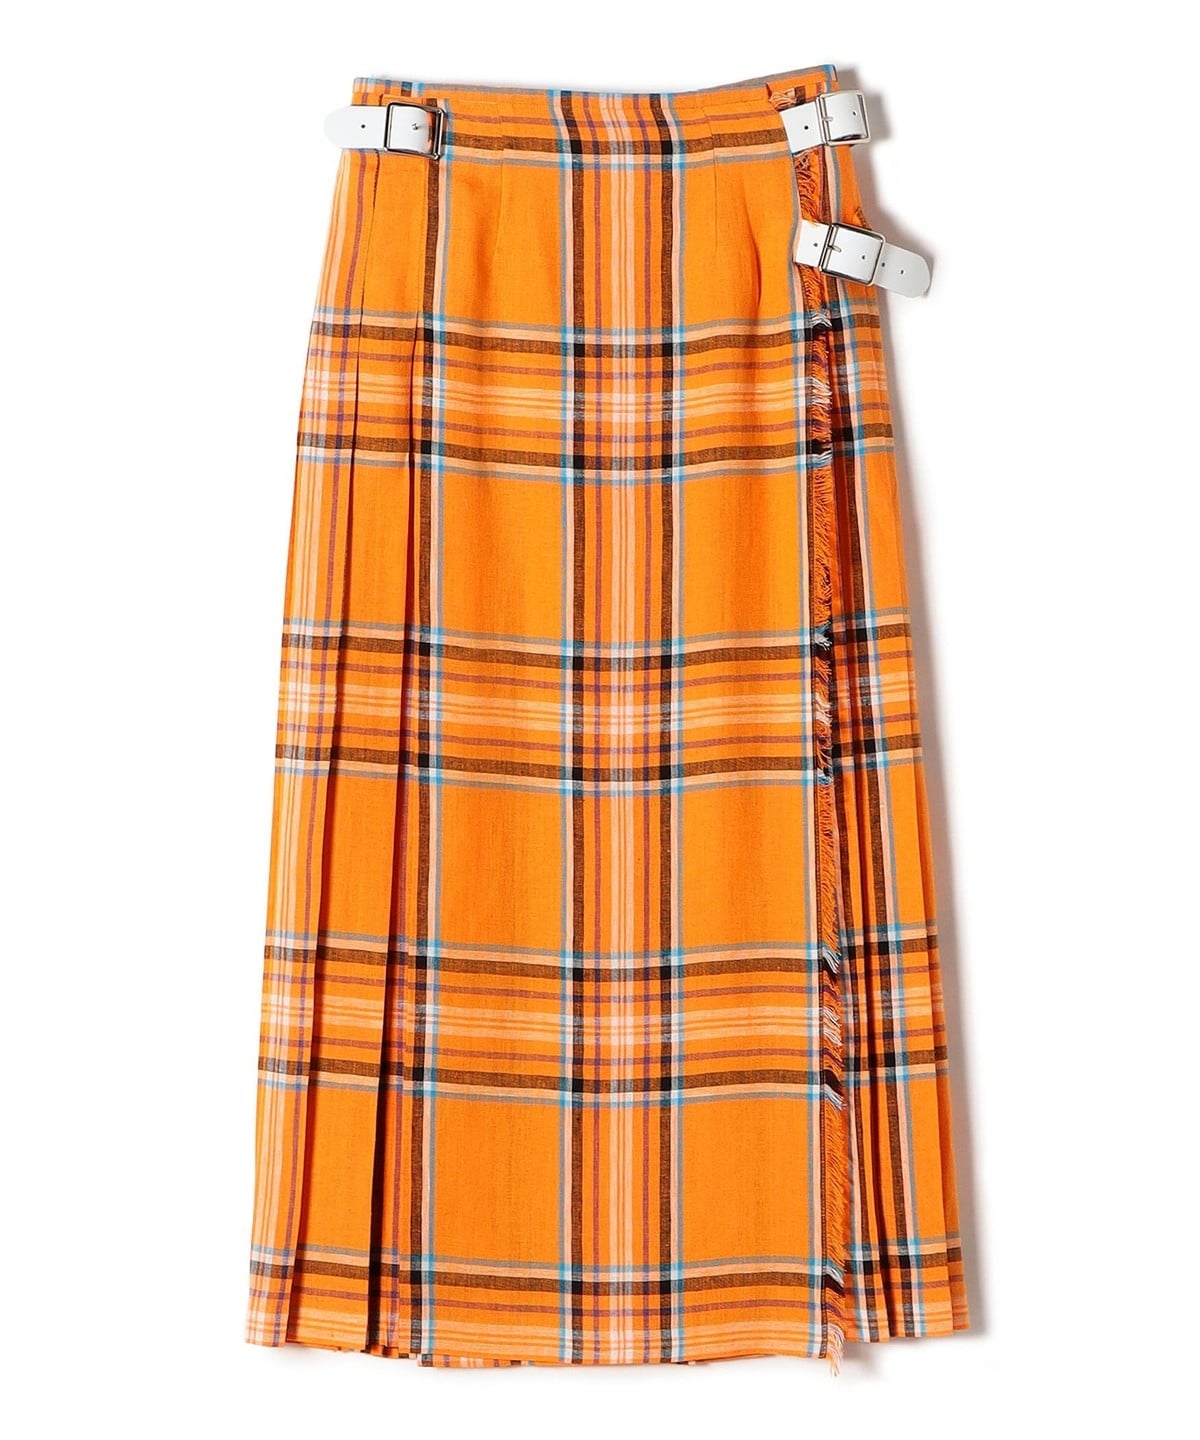 ONEIL OF DUBLIN:リネンファッションマキシキルトスカート オレンジ